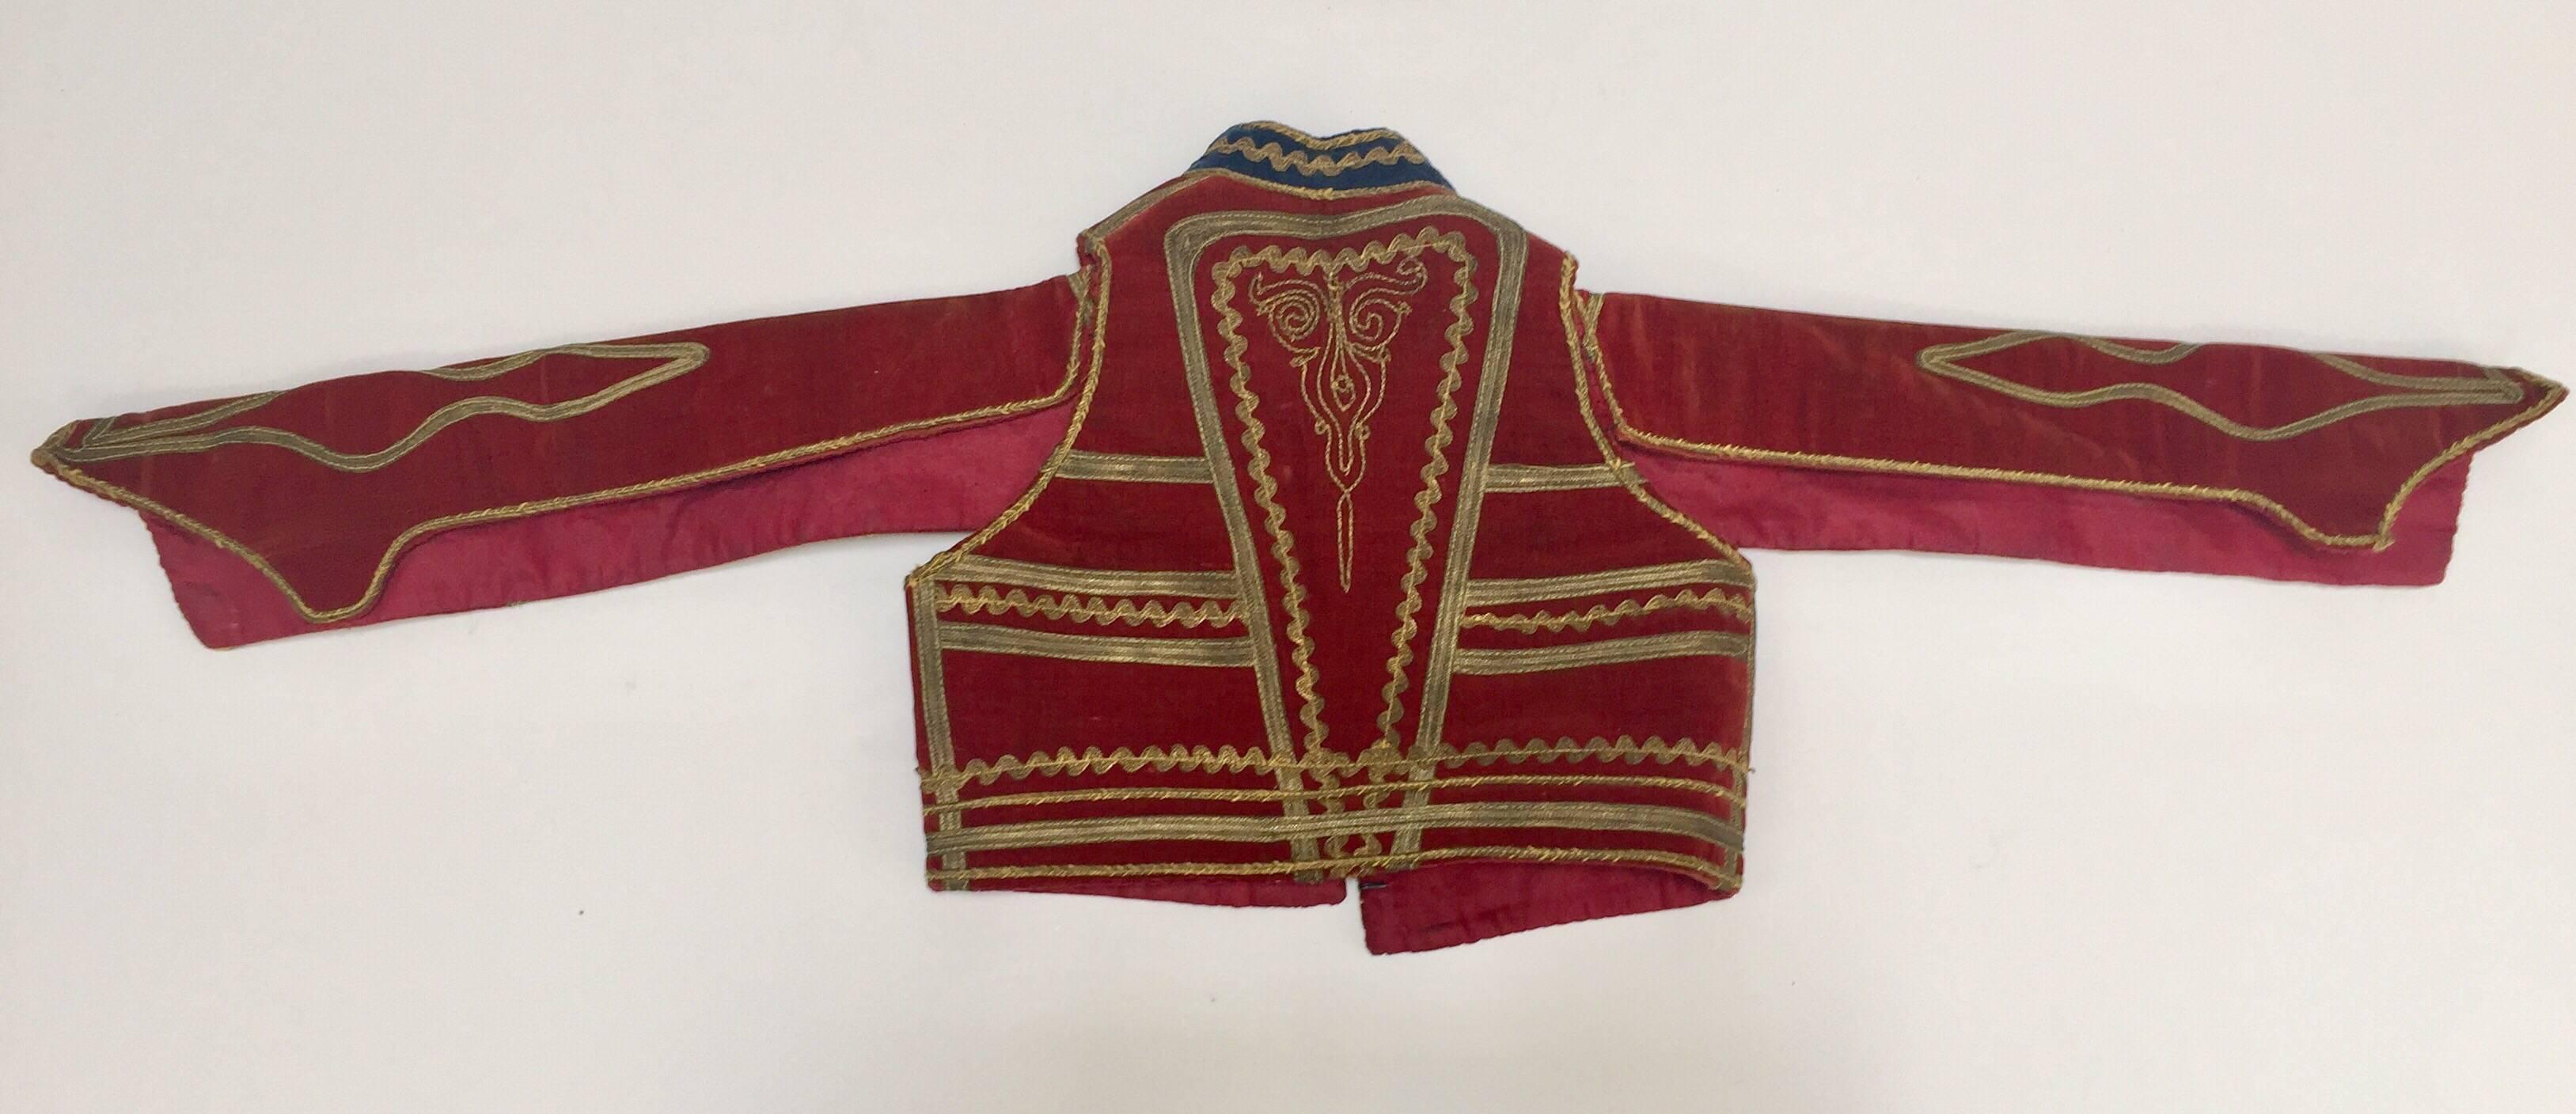 Antique Red Velvet Efe Zeybek Jacket Turkish Vest with Gold Embroidery For Sale 6